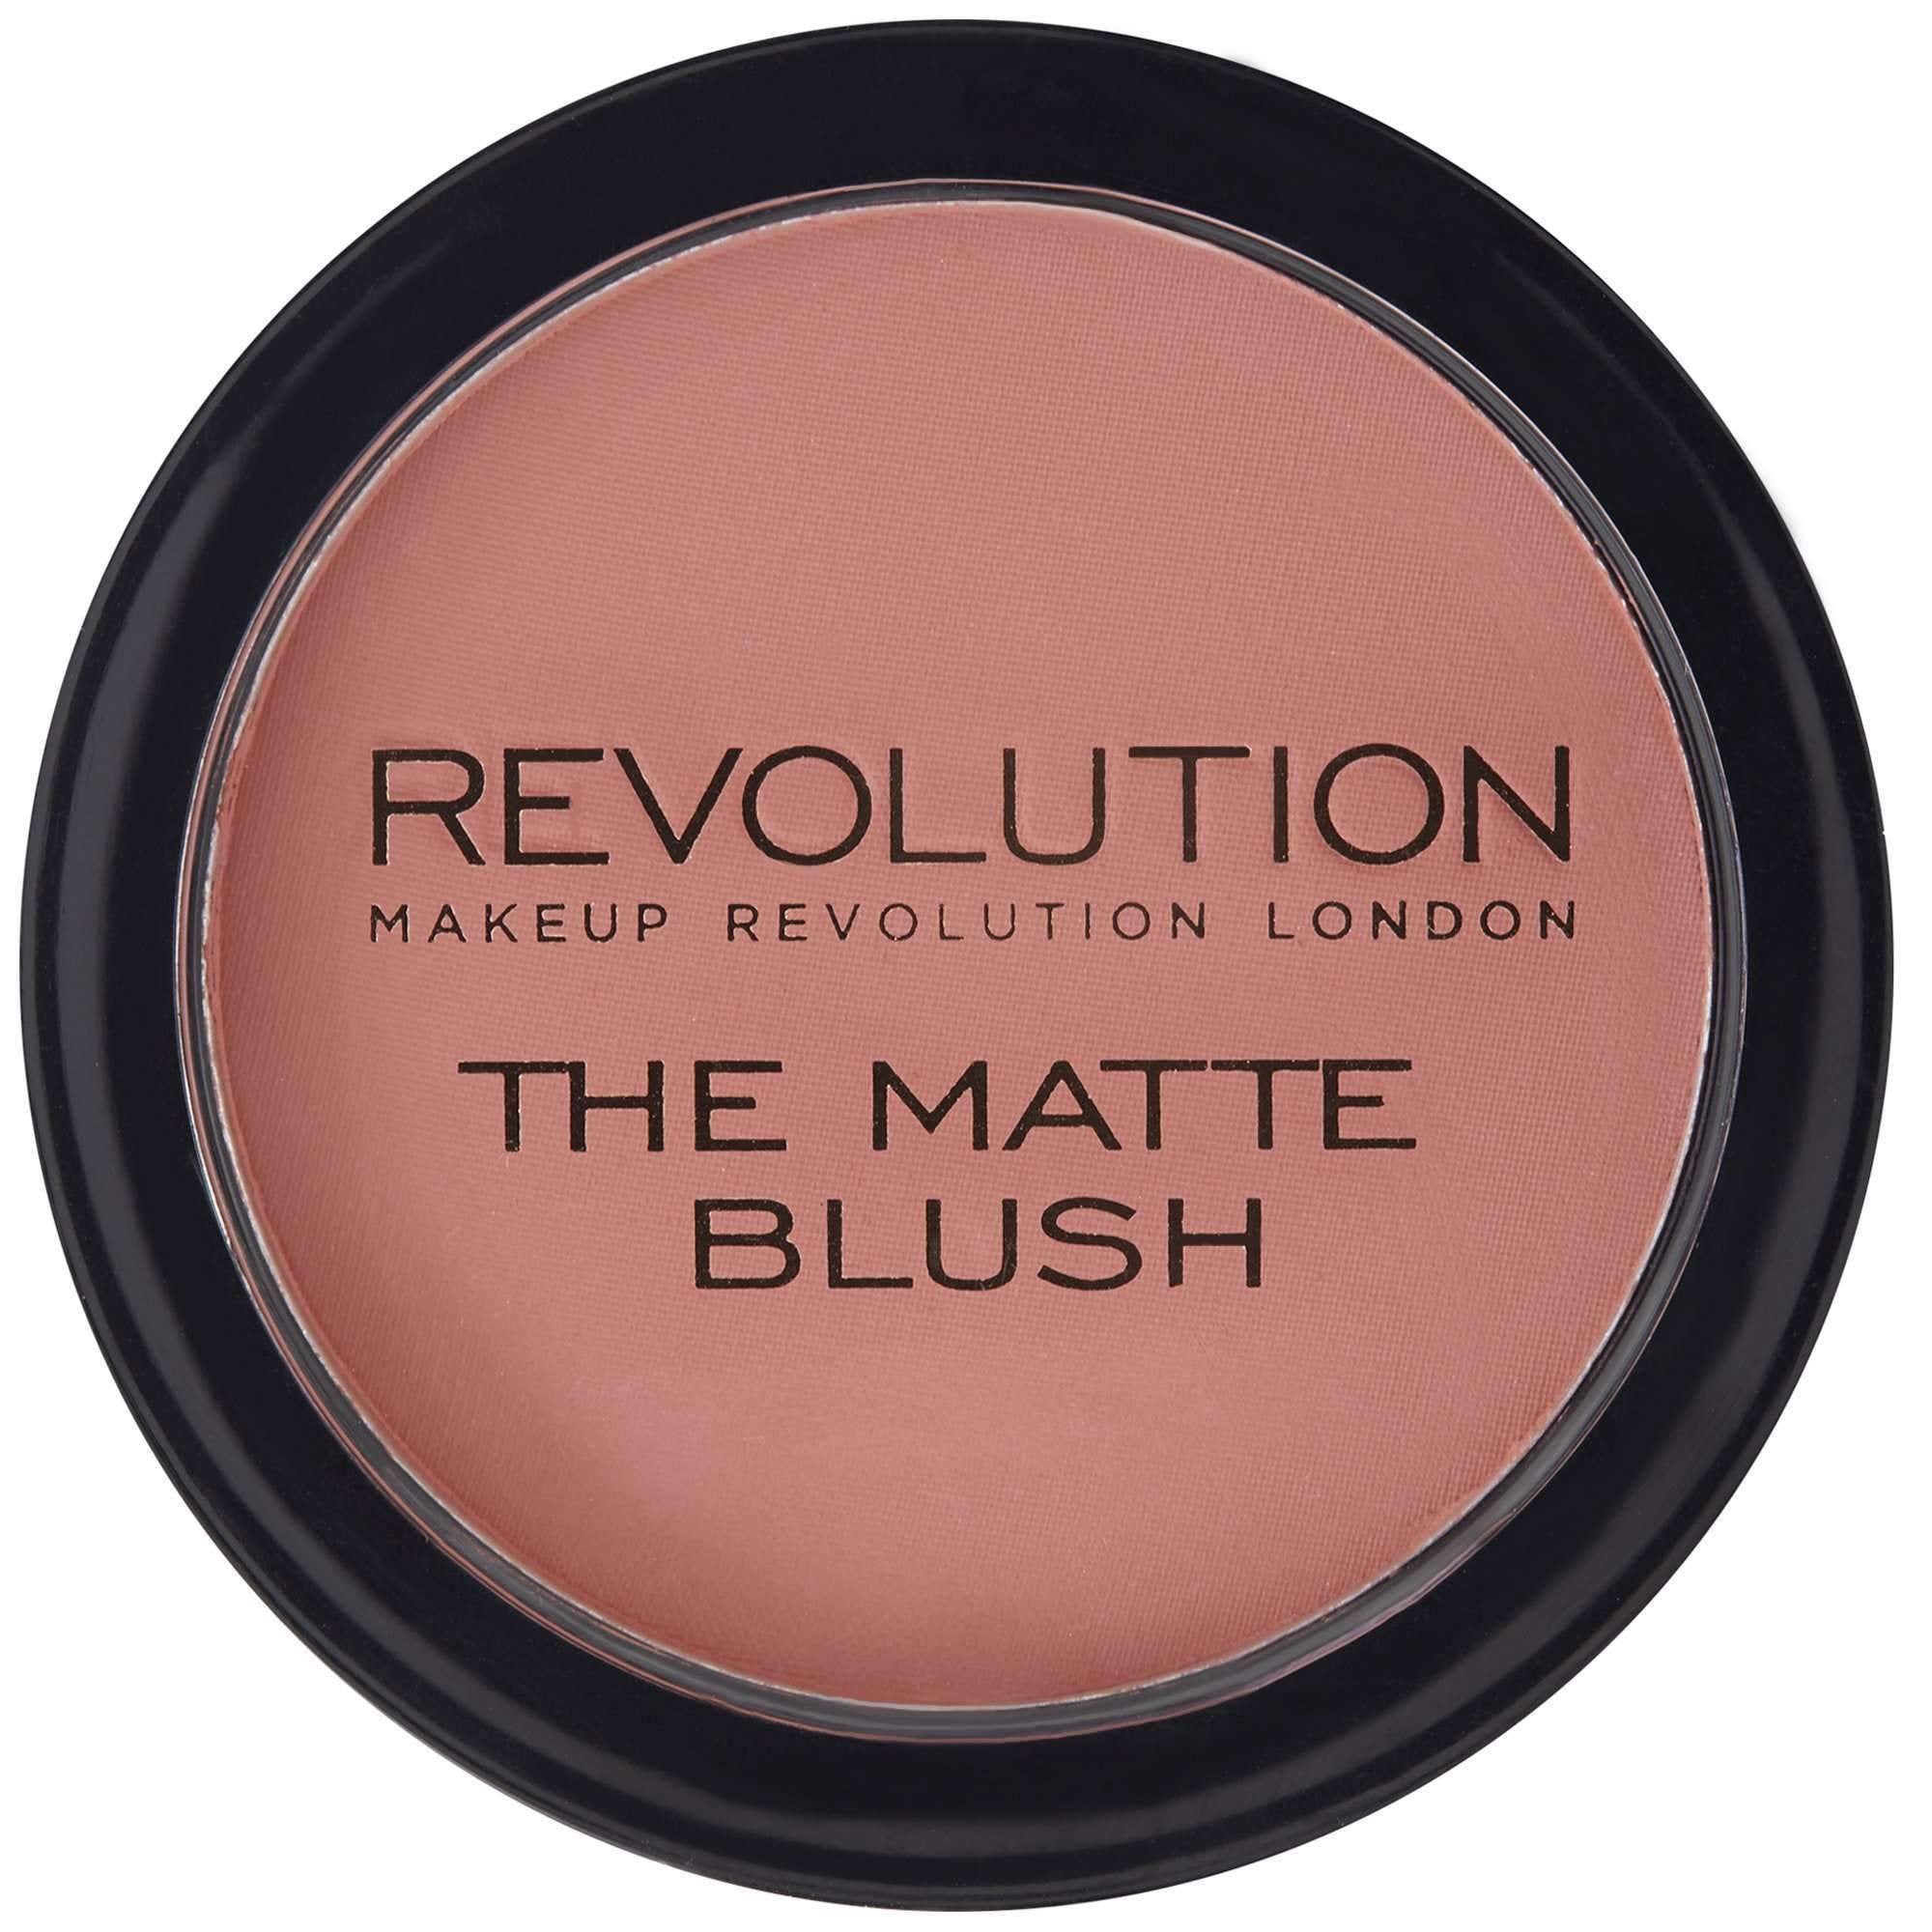 REVOLUTION The Matte Blush